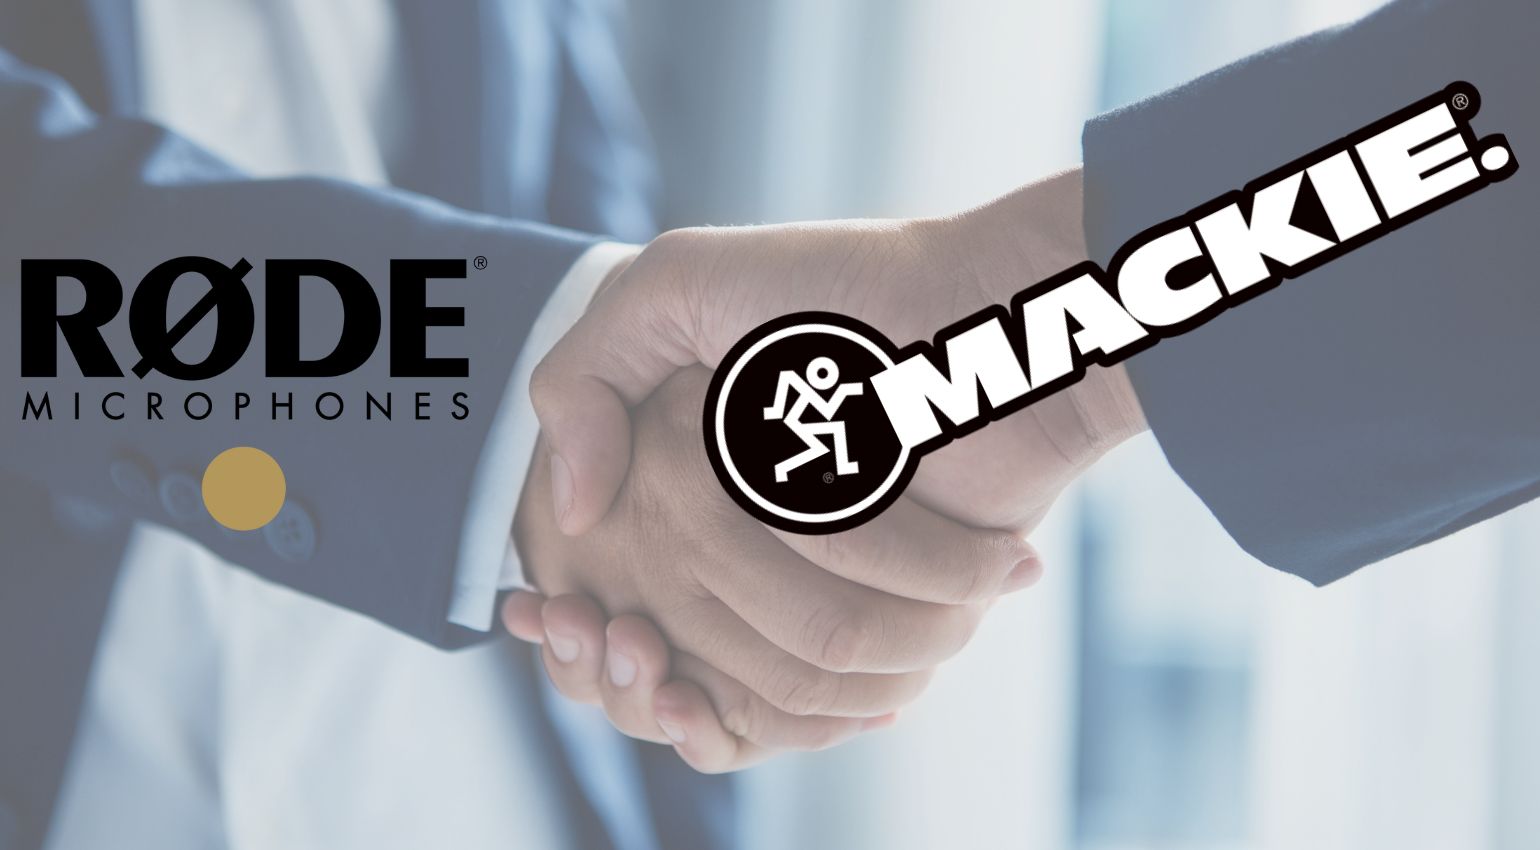 Rode achète Mackie : deux géants de la technologie musicale fusionnent dans le cadre d'un accord de 180 millions de dollars.